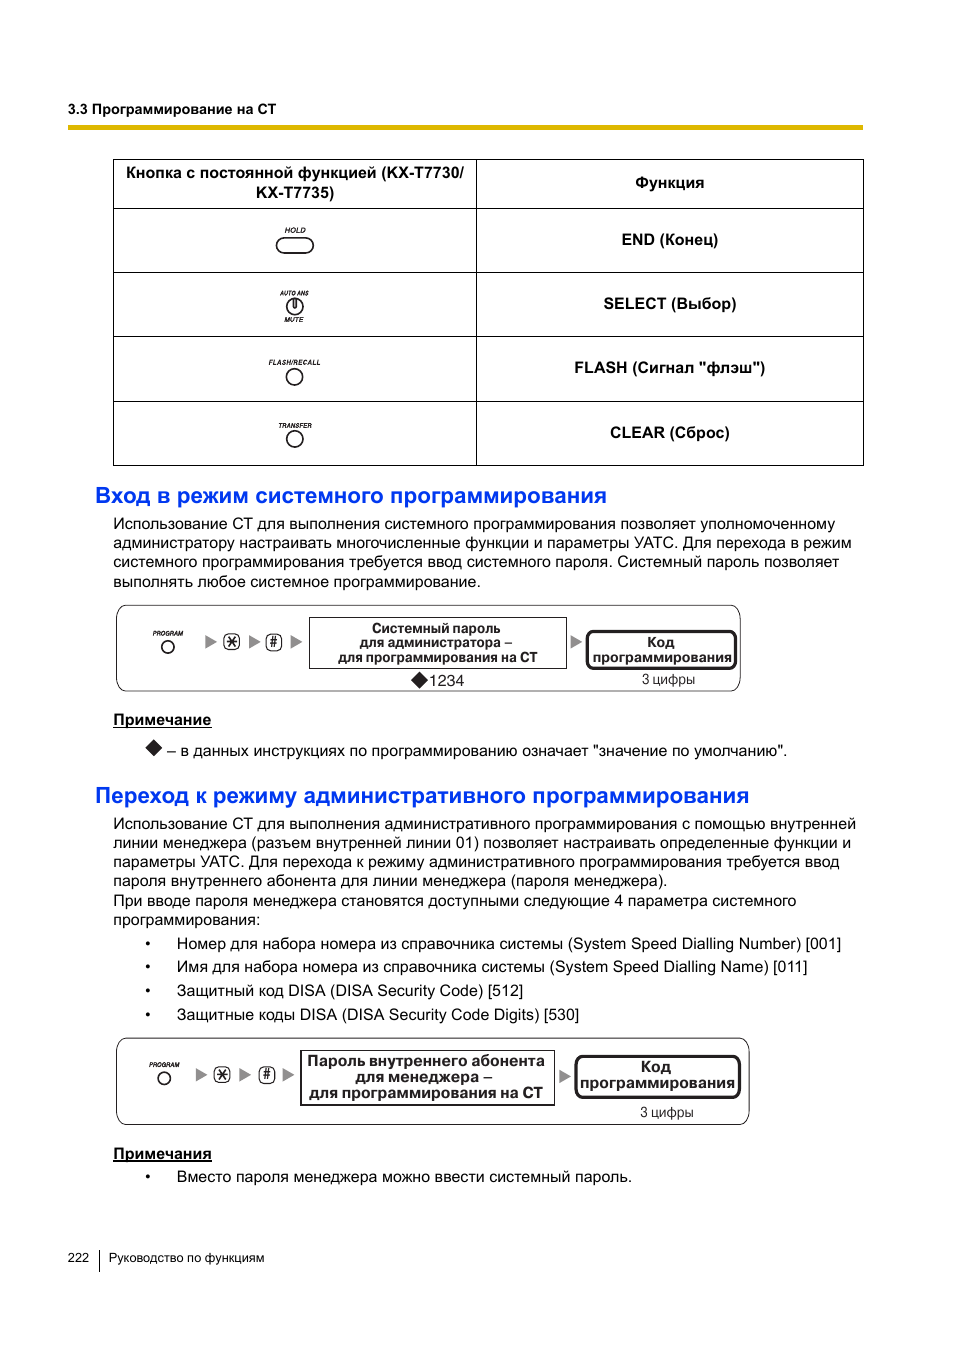 Вход в режим системного программирования | Инструкция по эксплуатации Panasonic KX-TEA308RU | Страница 222 / 318